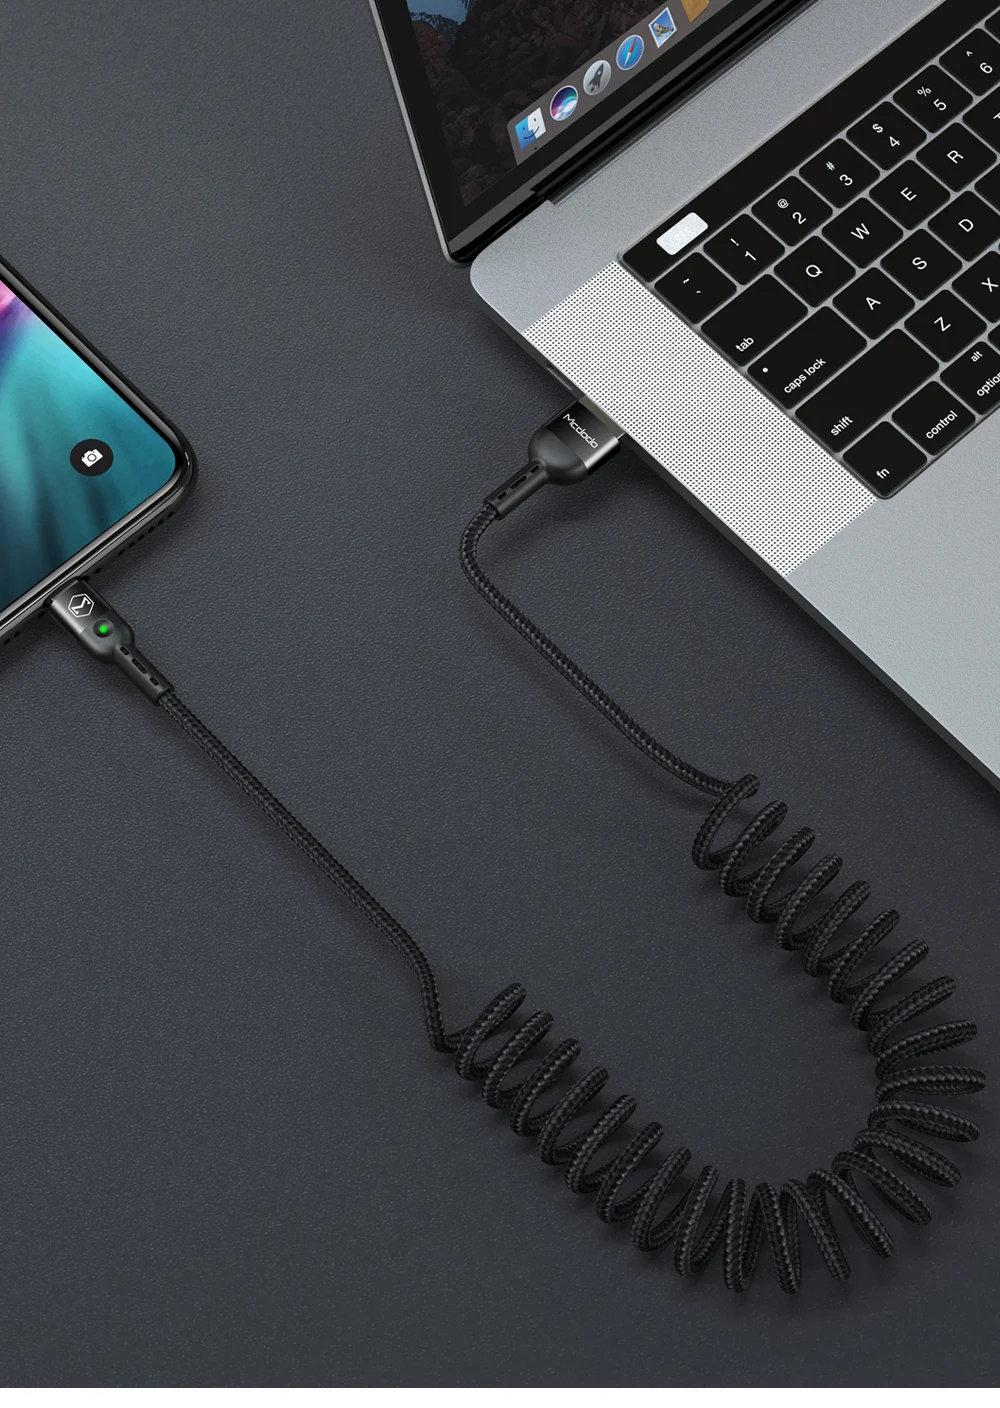 MCDODO 1,8 M Быстрая зарядка 4,0 type C кабель для samsung S10 Note 9 huawei P30 Pro Xiaomi Phone Быстрая зарядка usb type-C кабель для передачи данных